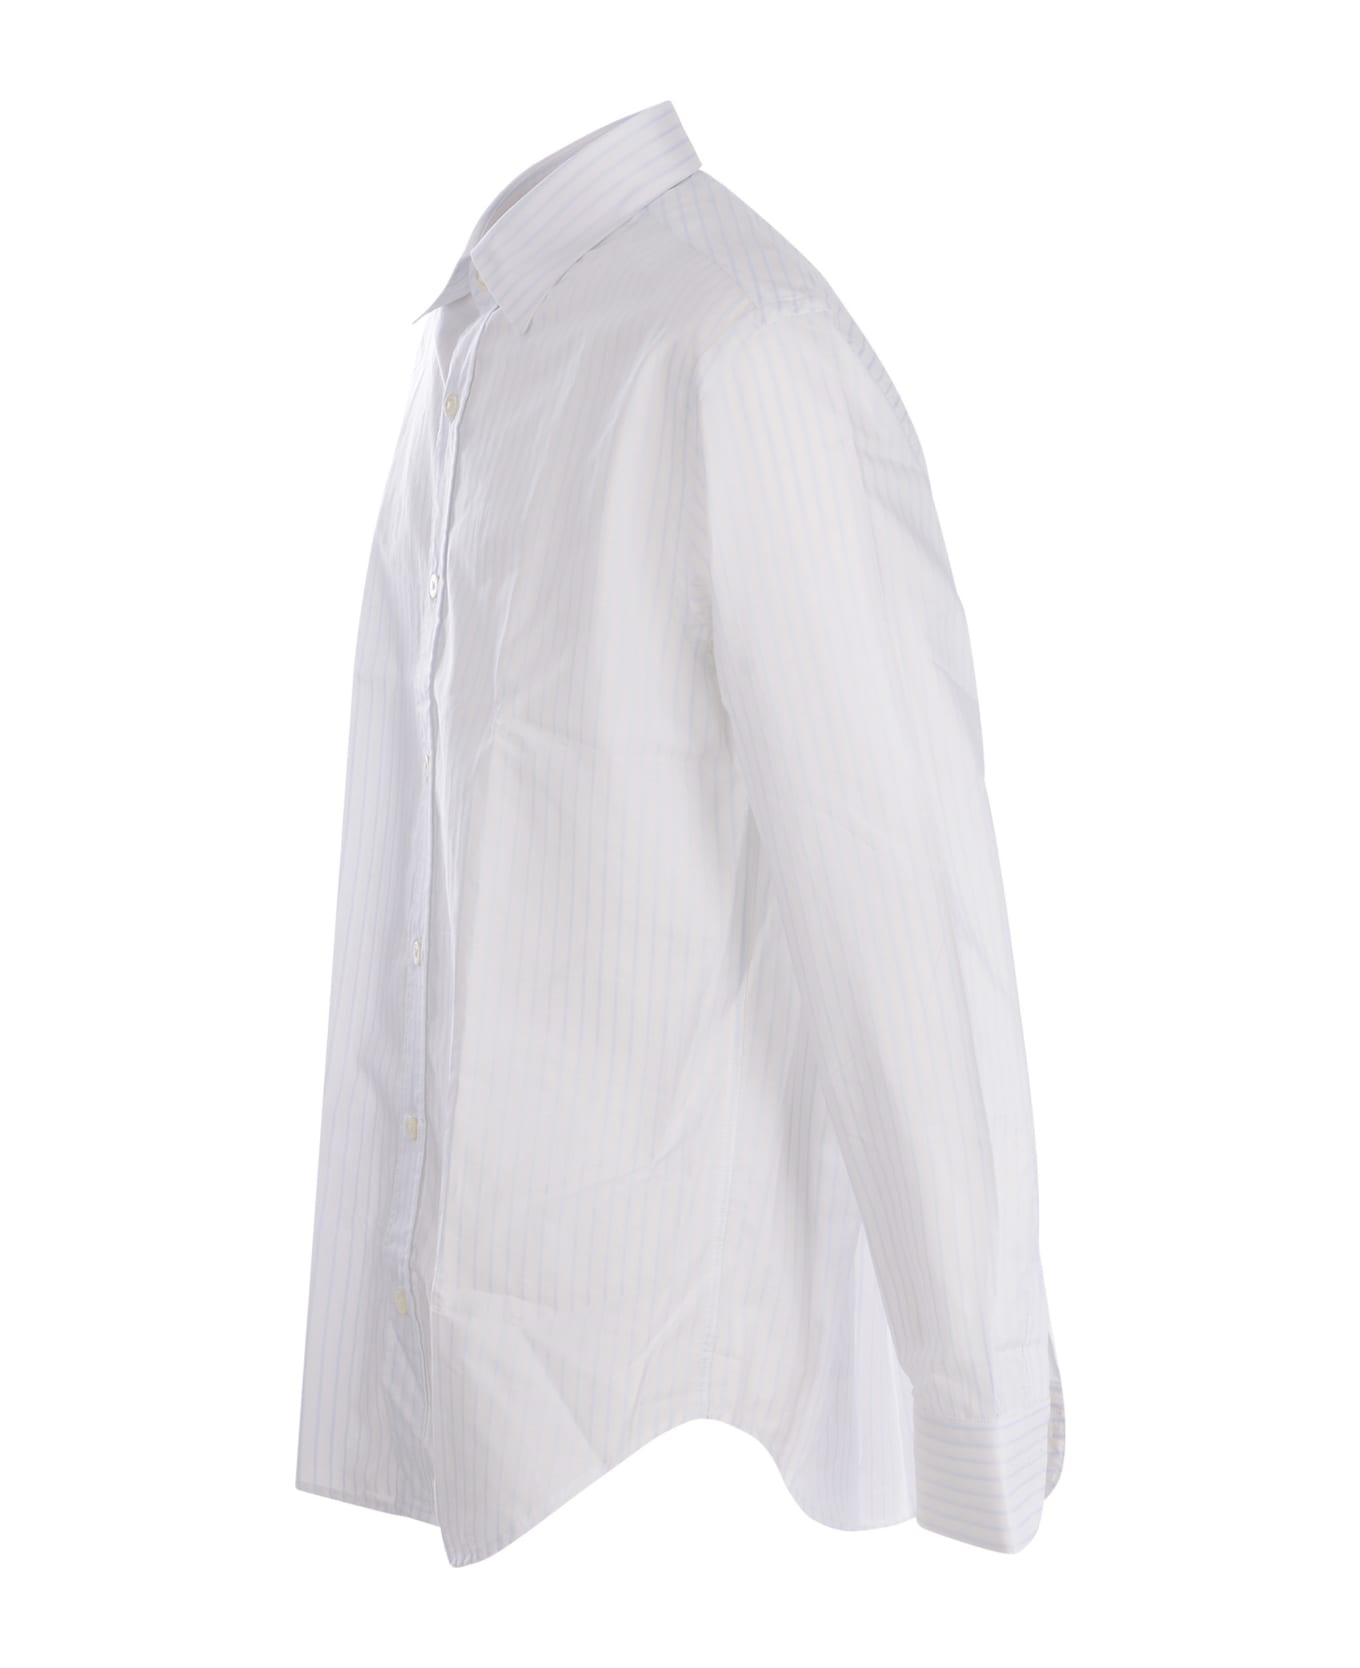 costumein Shirt Costumein In Cotton Poplin - Bianco シャツ